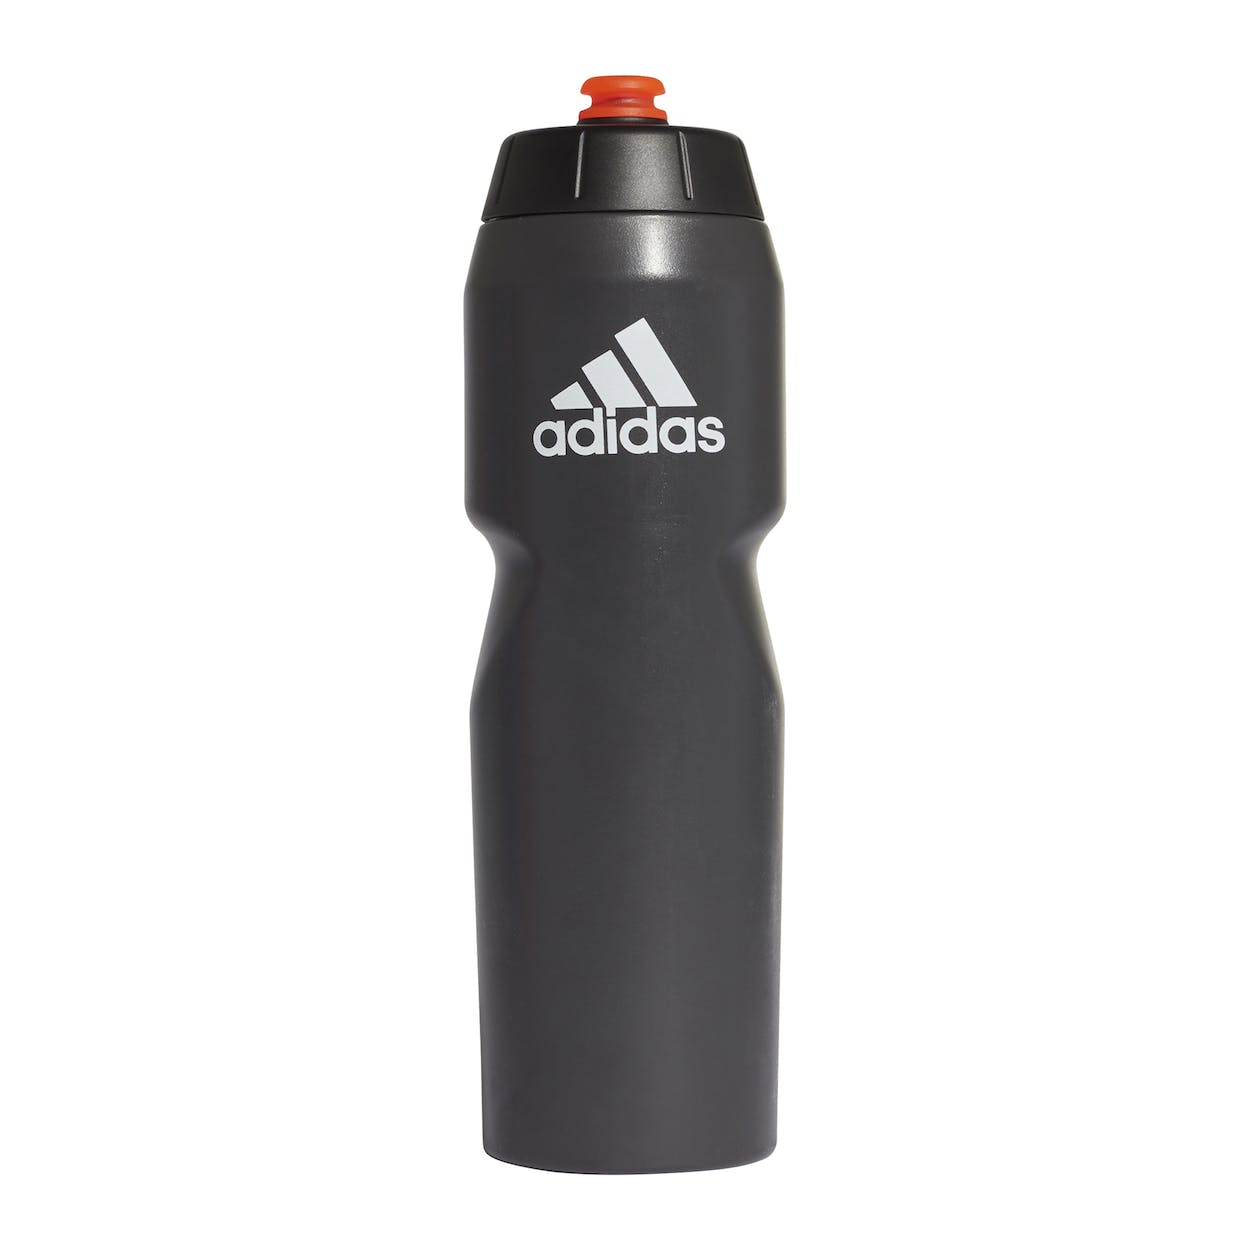 Adidas Performance Bottle